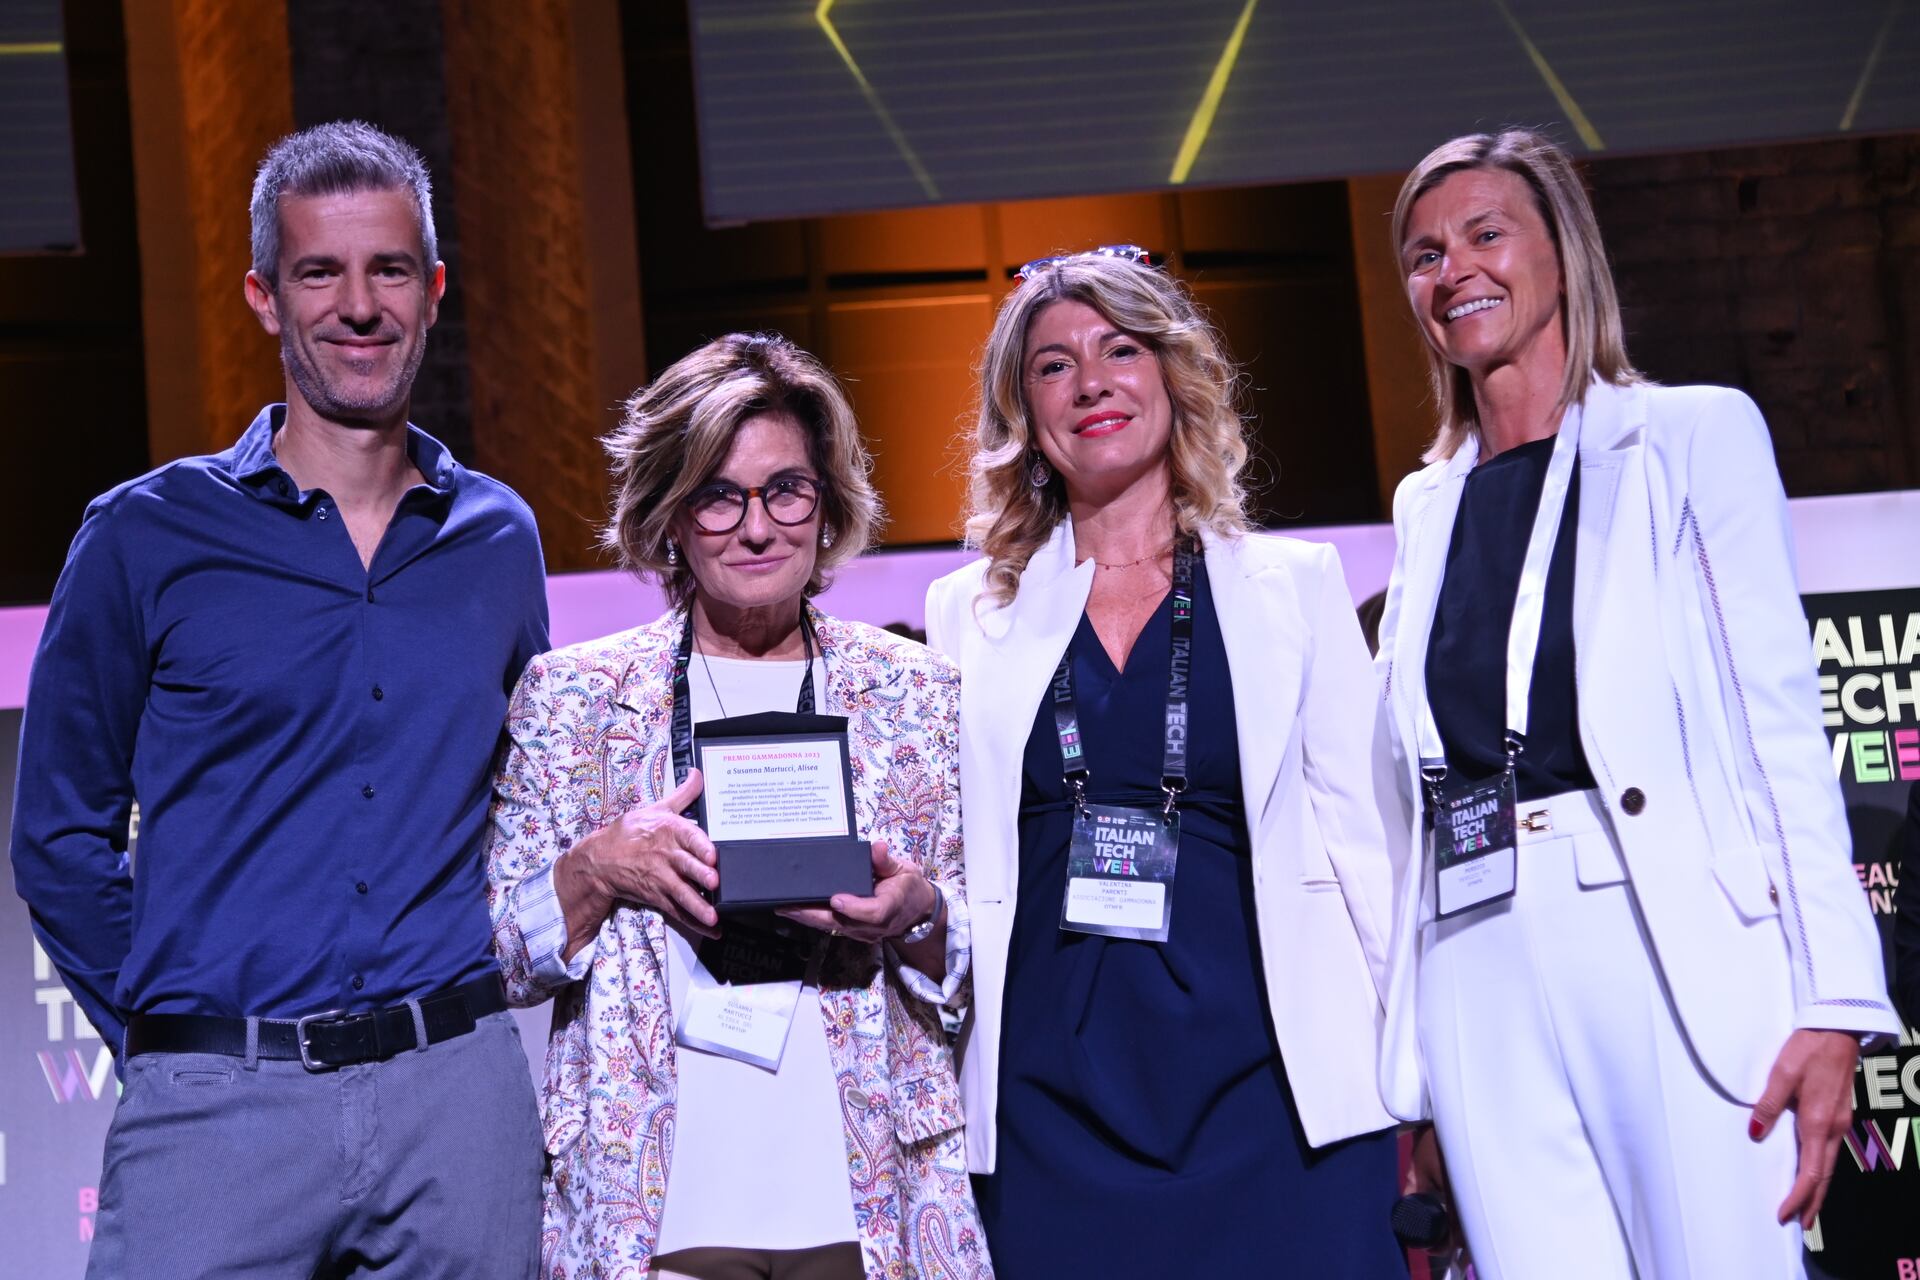 Nagrada GammaDonna: Marco i Valentina Parenti, Susanna Martucci i Claudia Persico